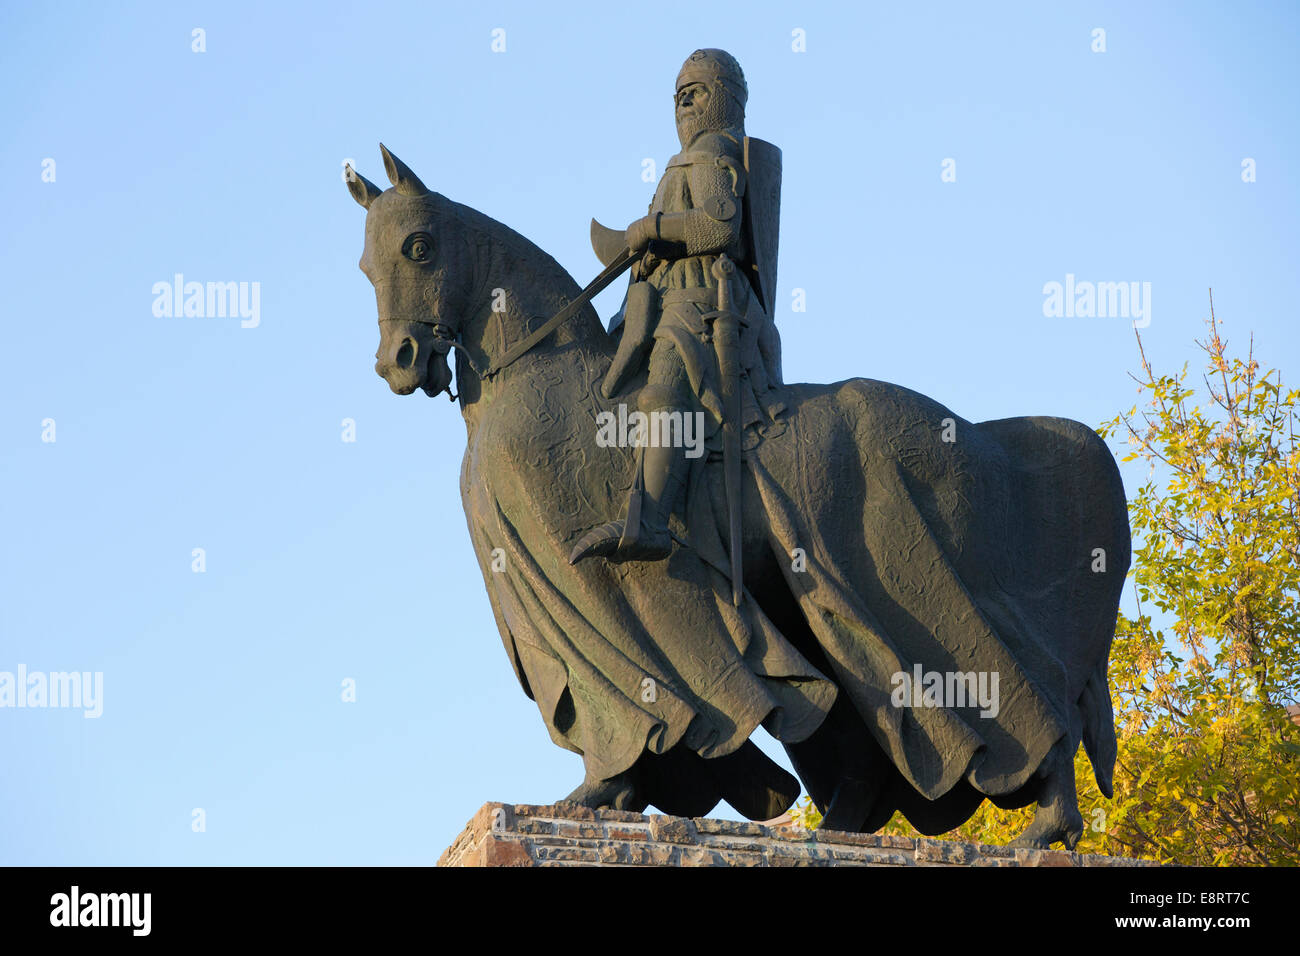 Statue de bronze de Robert le roi Bruce d'Écosse à cheval, commémorant la bataille de Bannockburn. L'homme et le cheval portent tous les deux une armure de corps. Banque D'Images